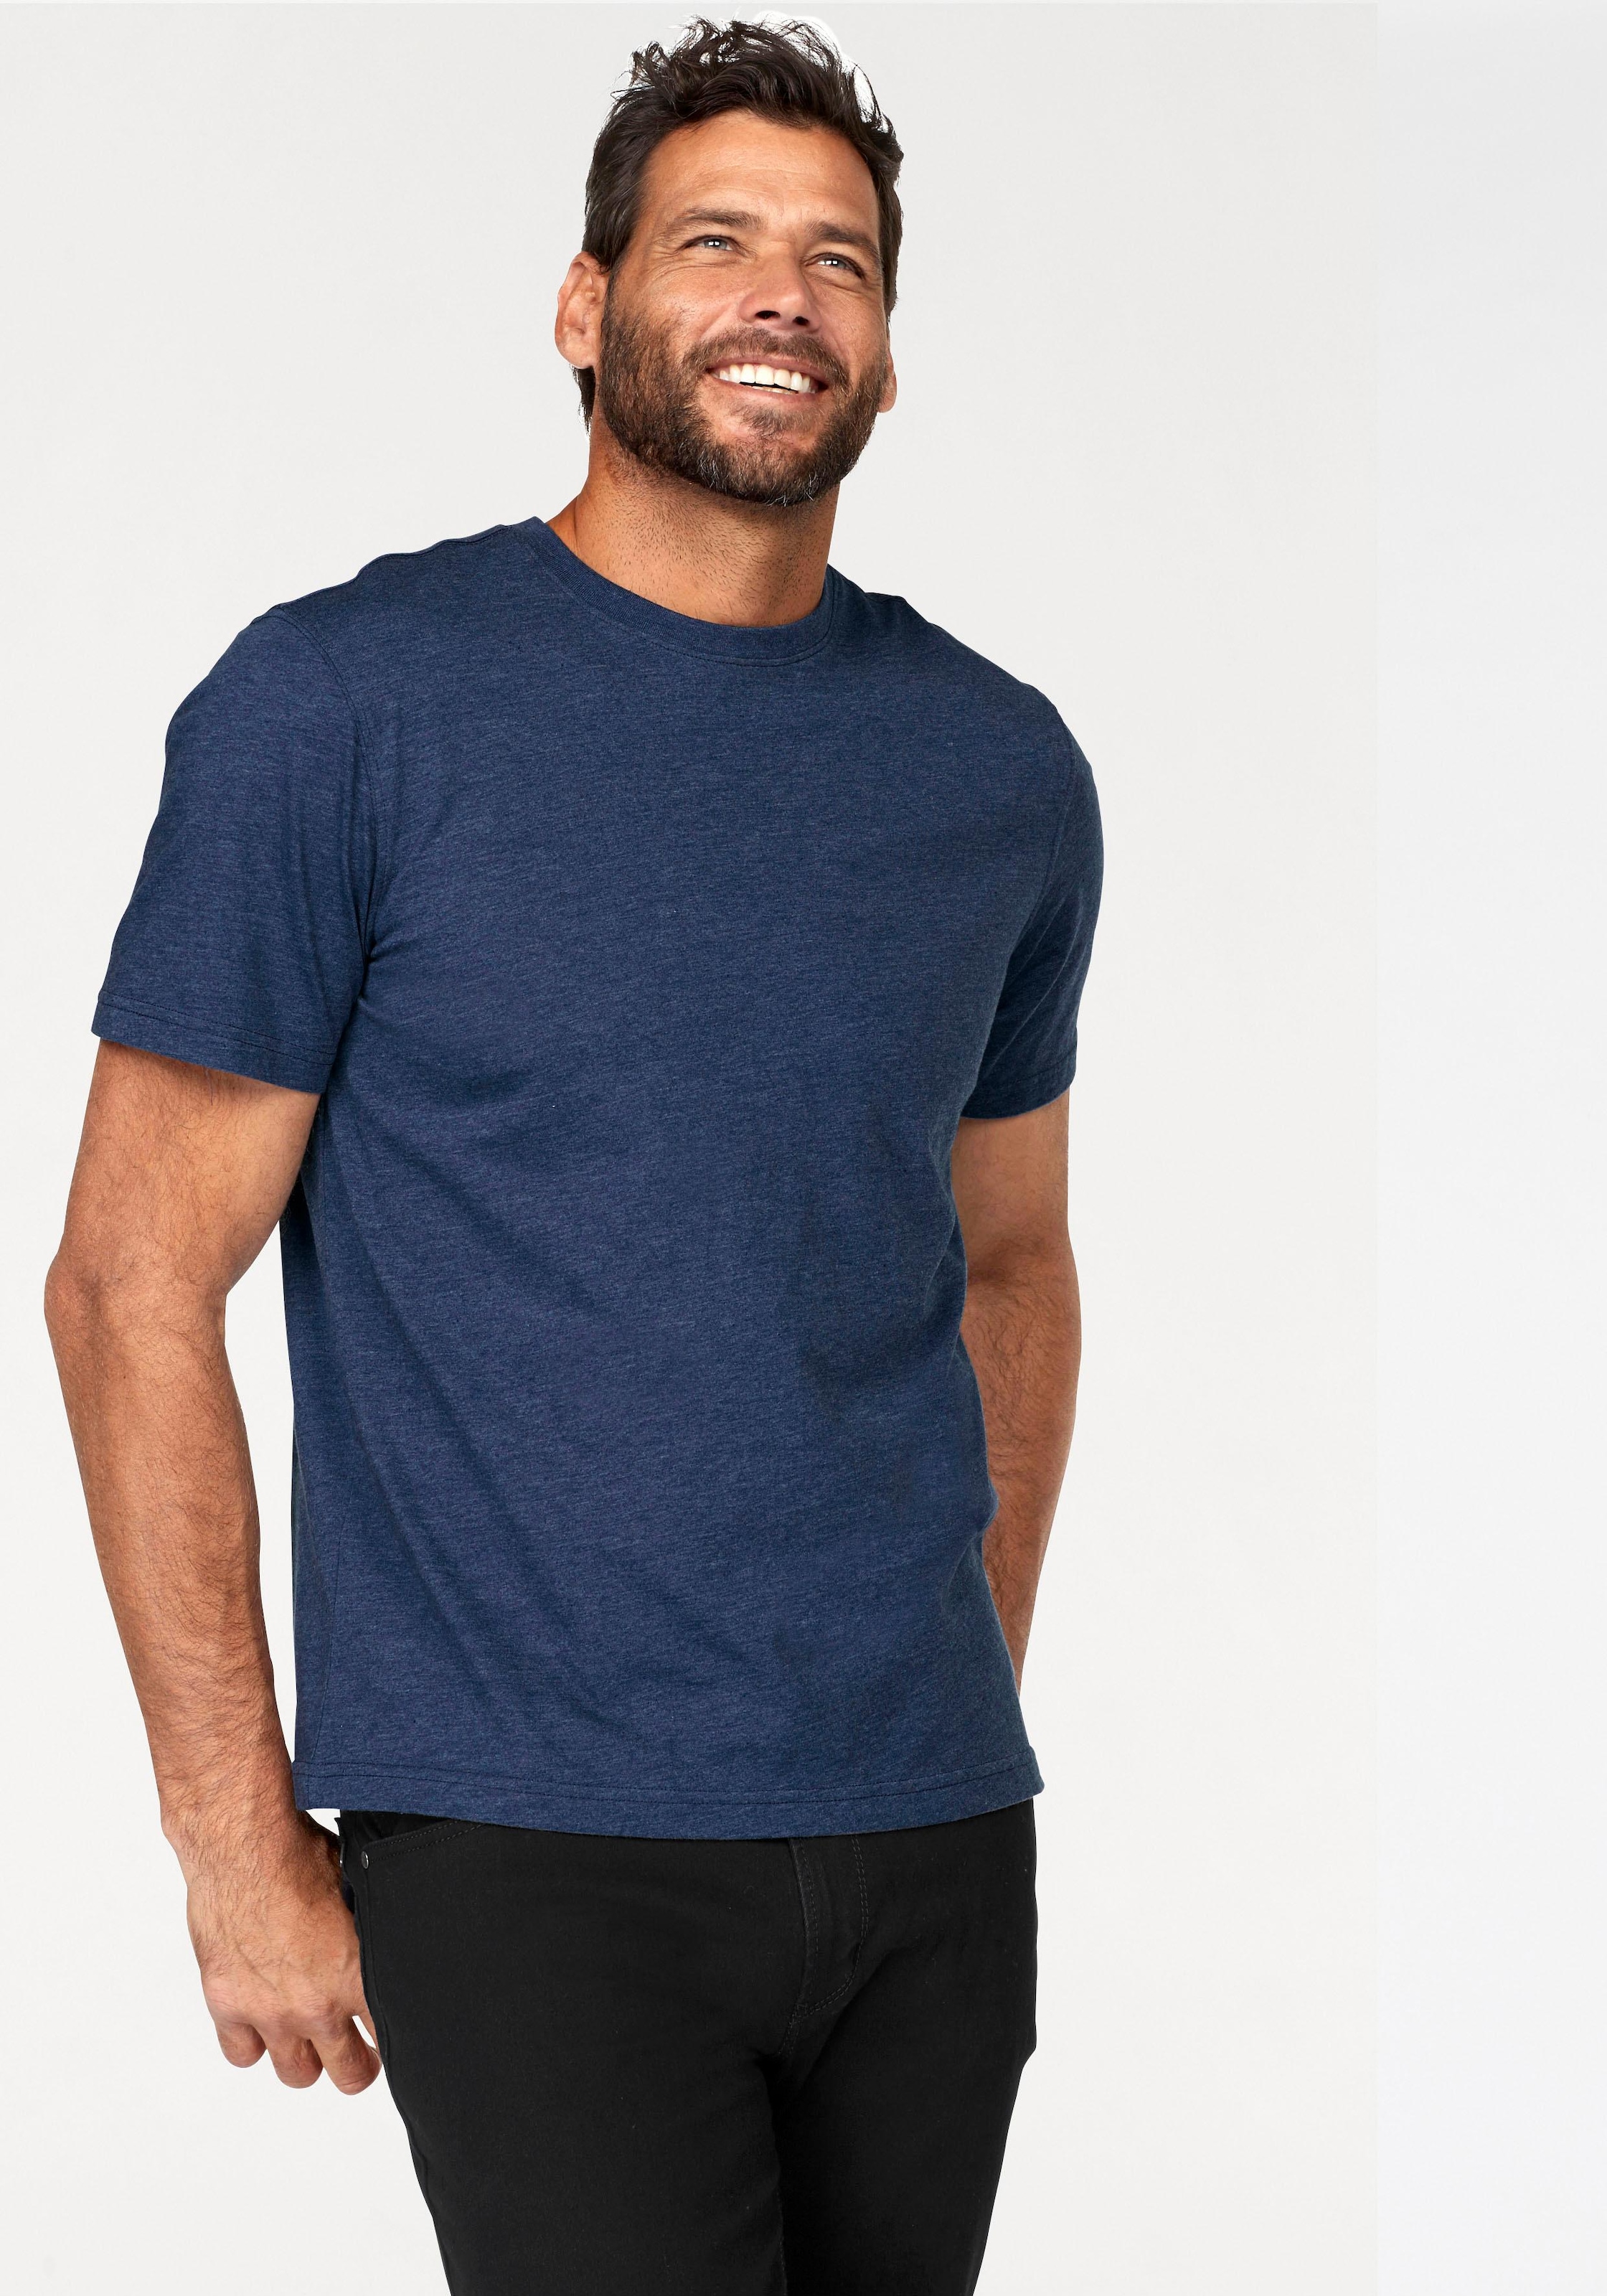 Man's World T-Shirt, perfekt auch als Unterzieh T-shirt